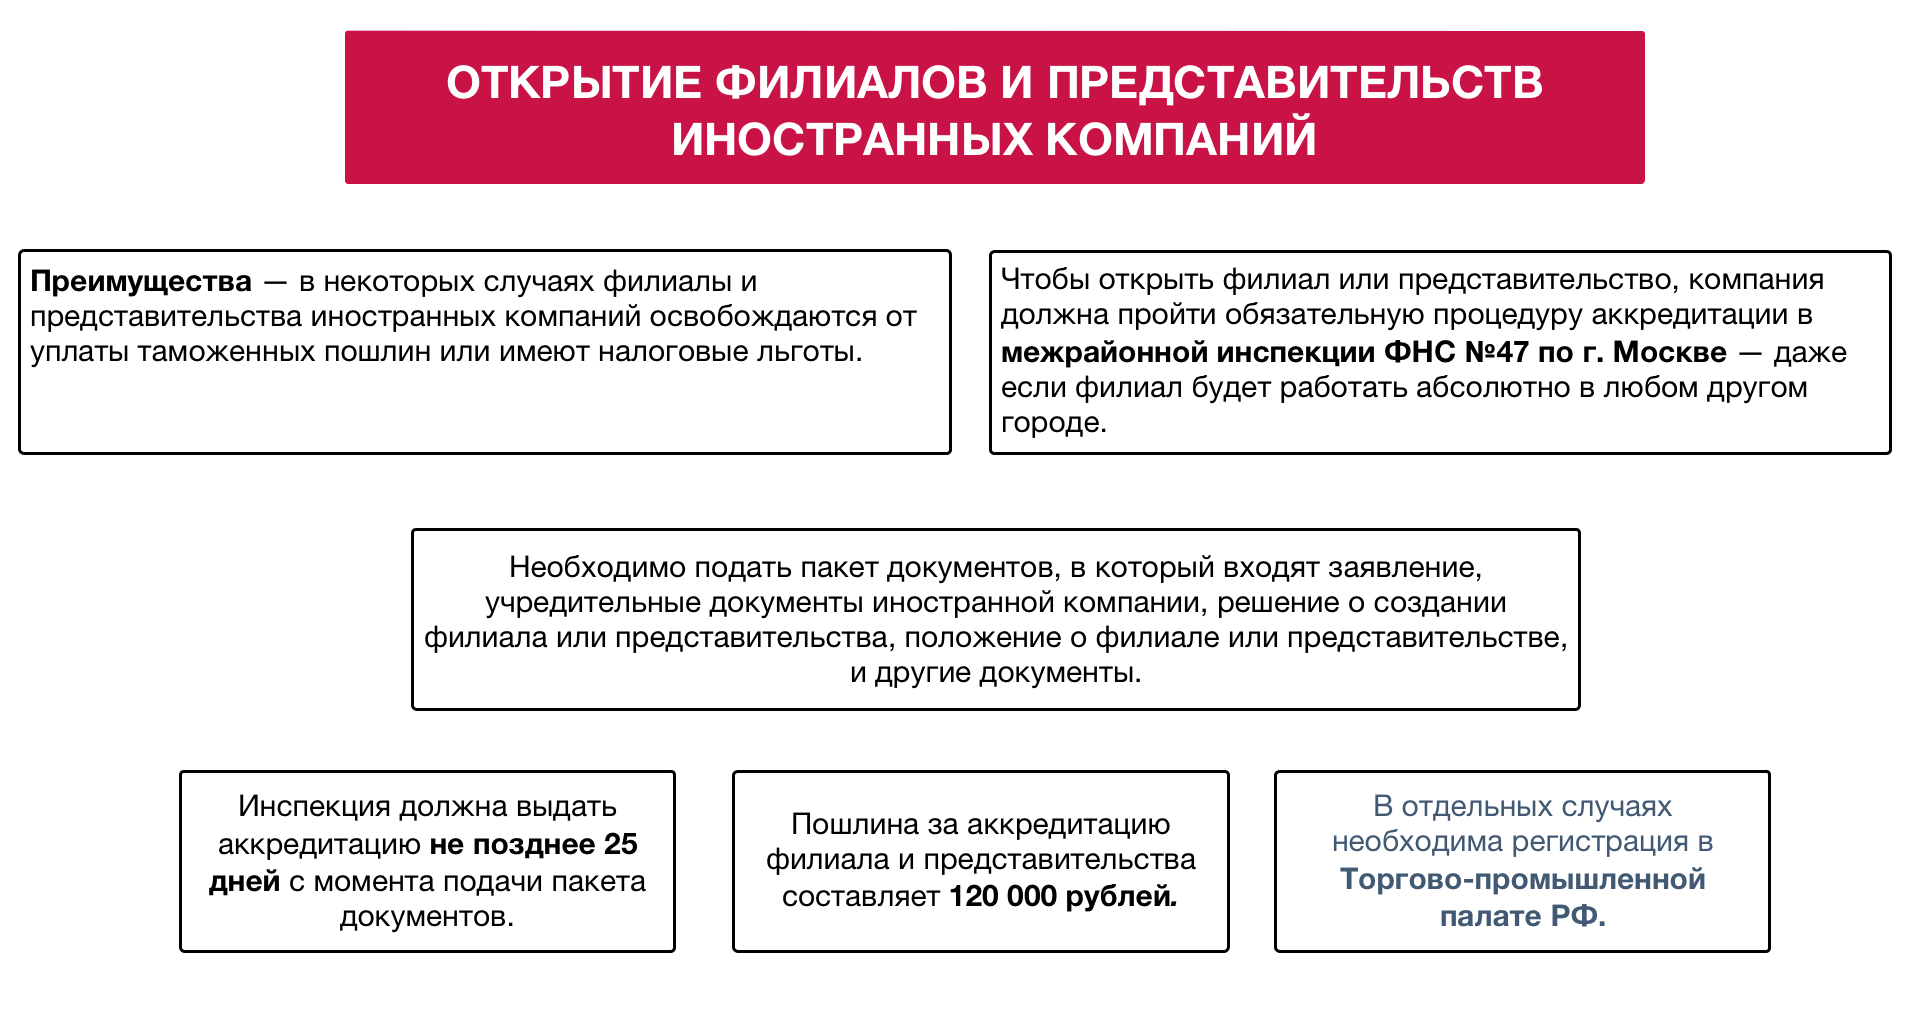 Филиалы и представительства российских организаций